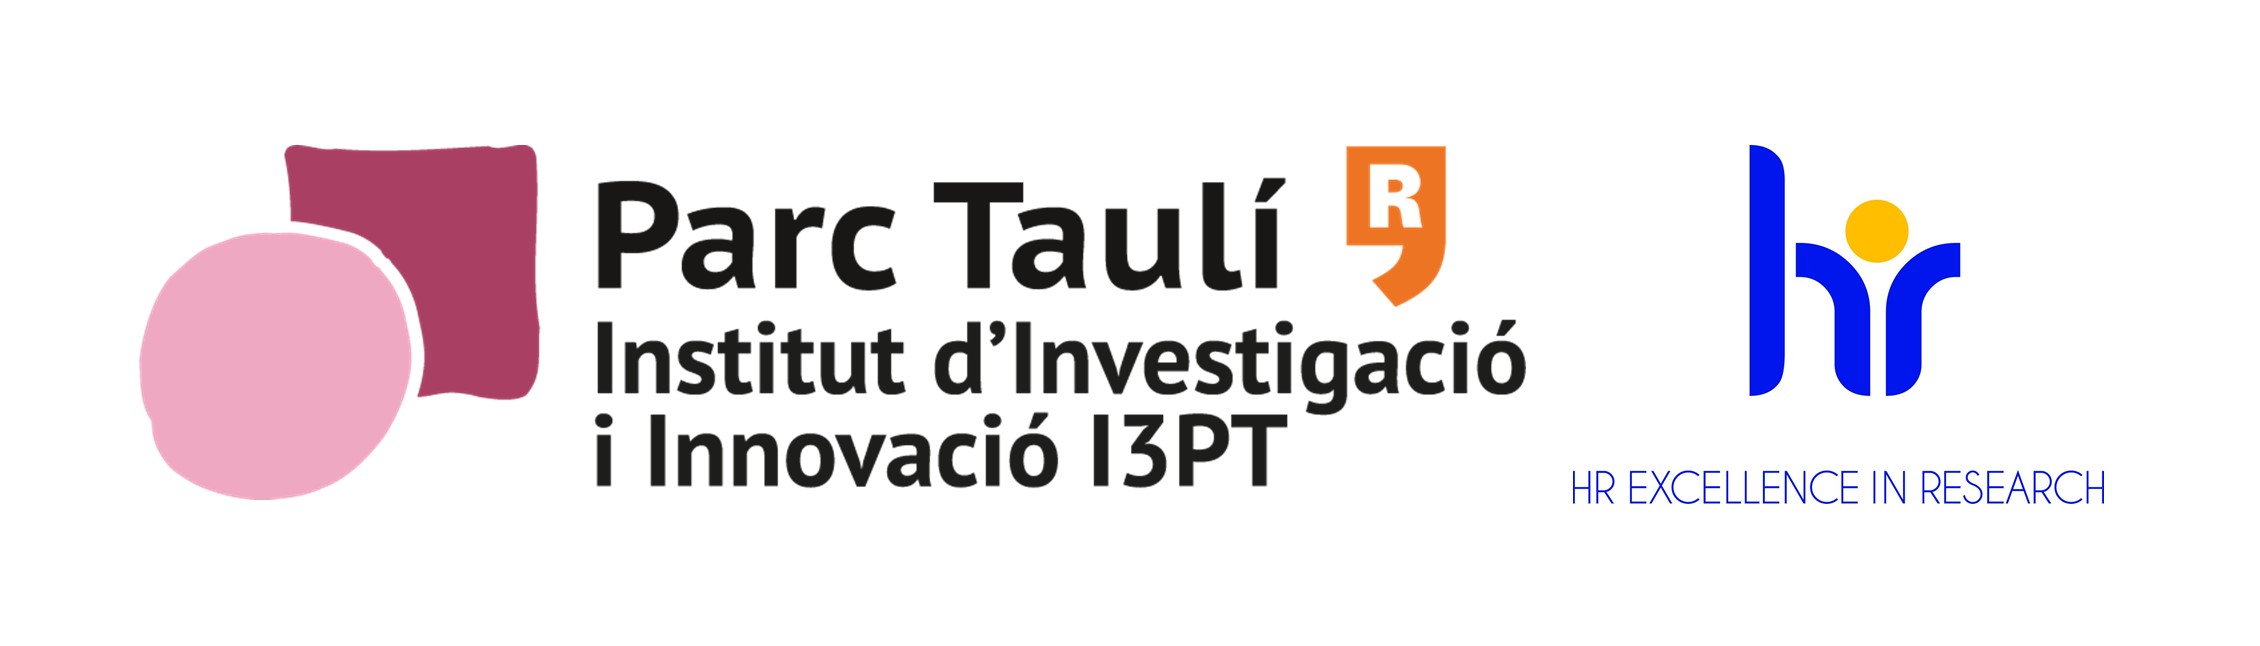 Institut d'Investigació i Innovació Parc Taulí (I3PT)